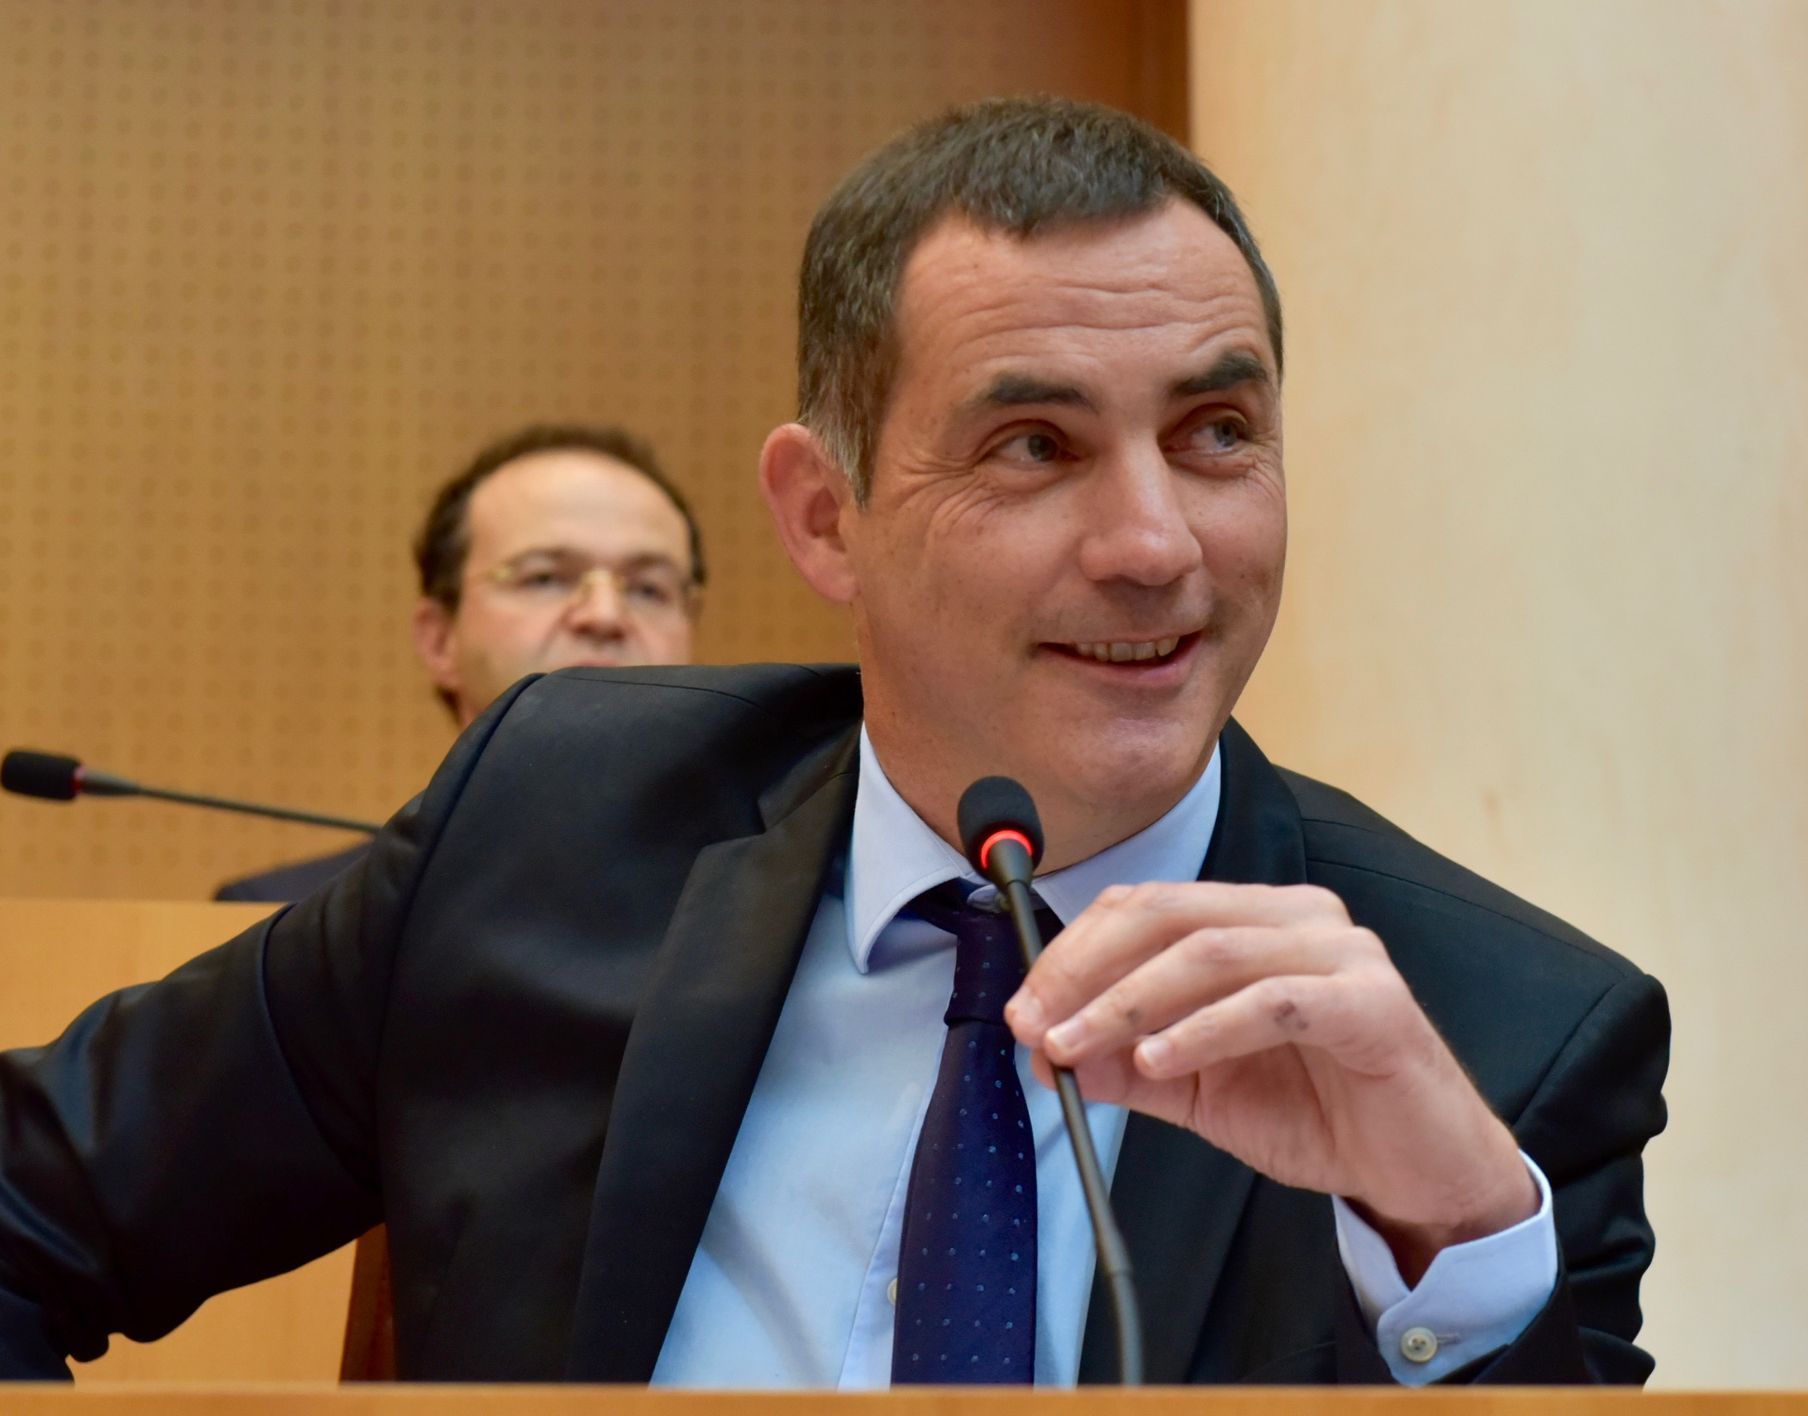 Lídr korsické politické koalice Pe a Corsica (Pro Korsiku) Gilles Simeoni.